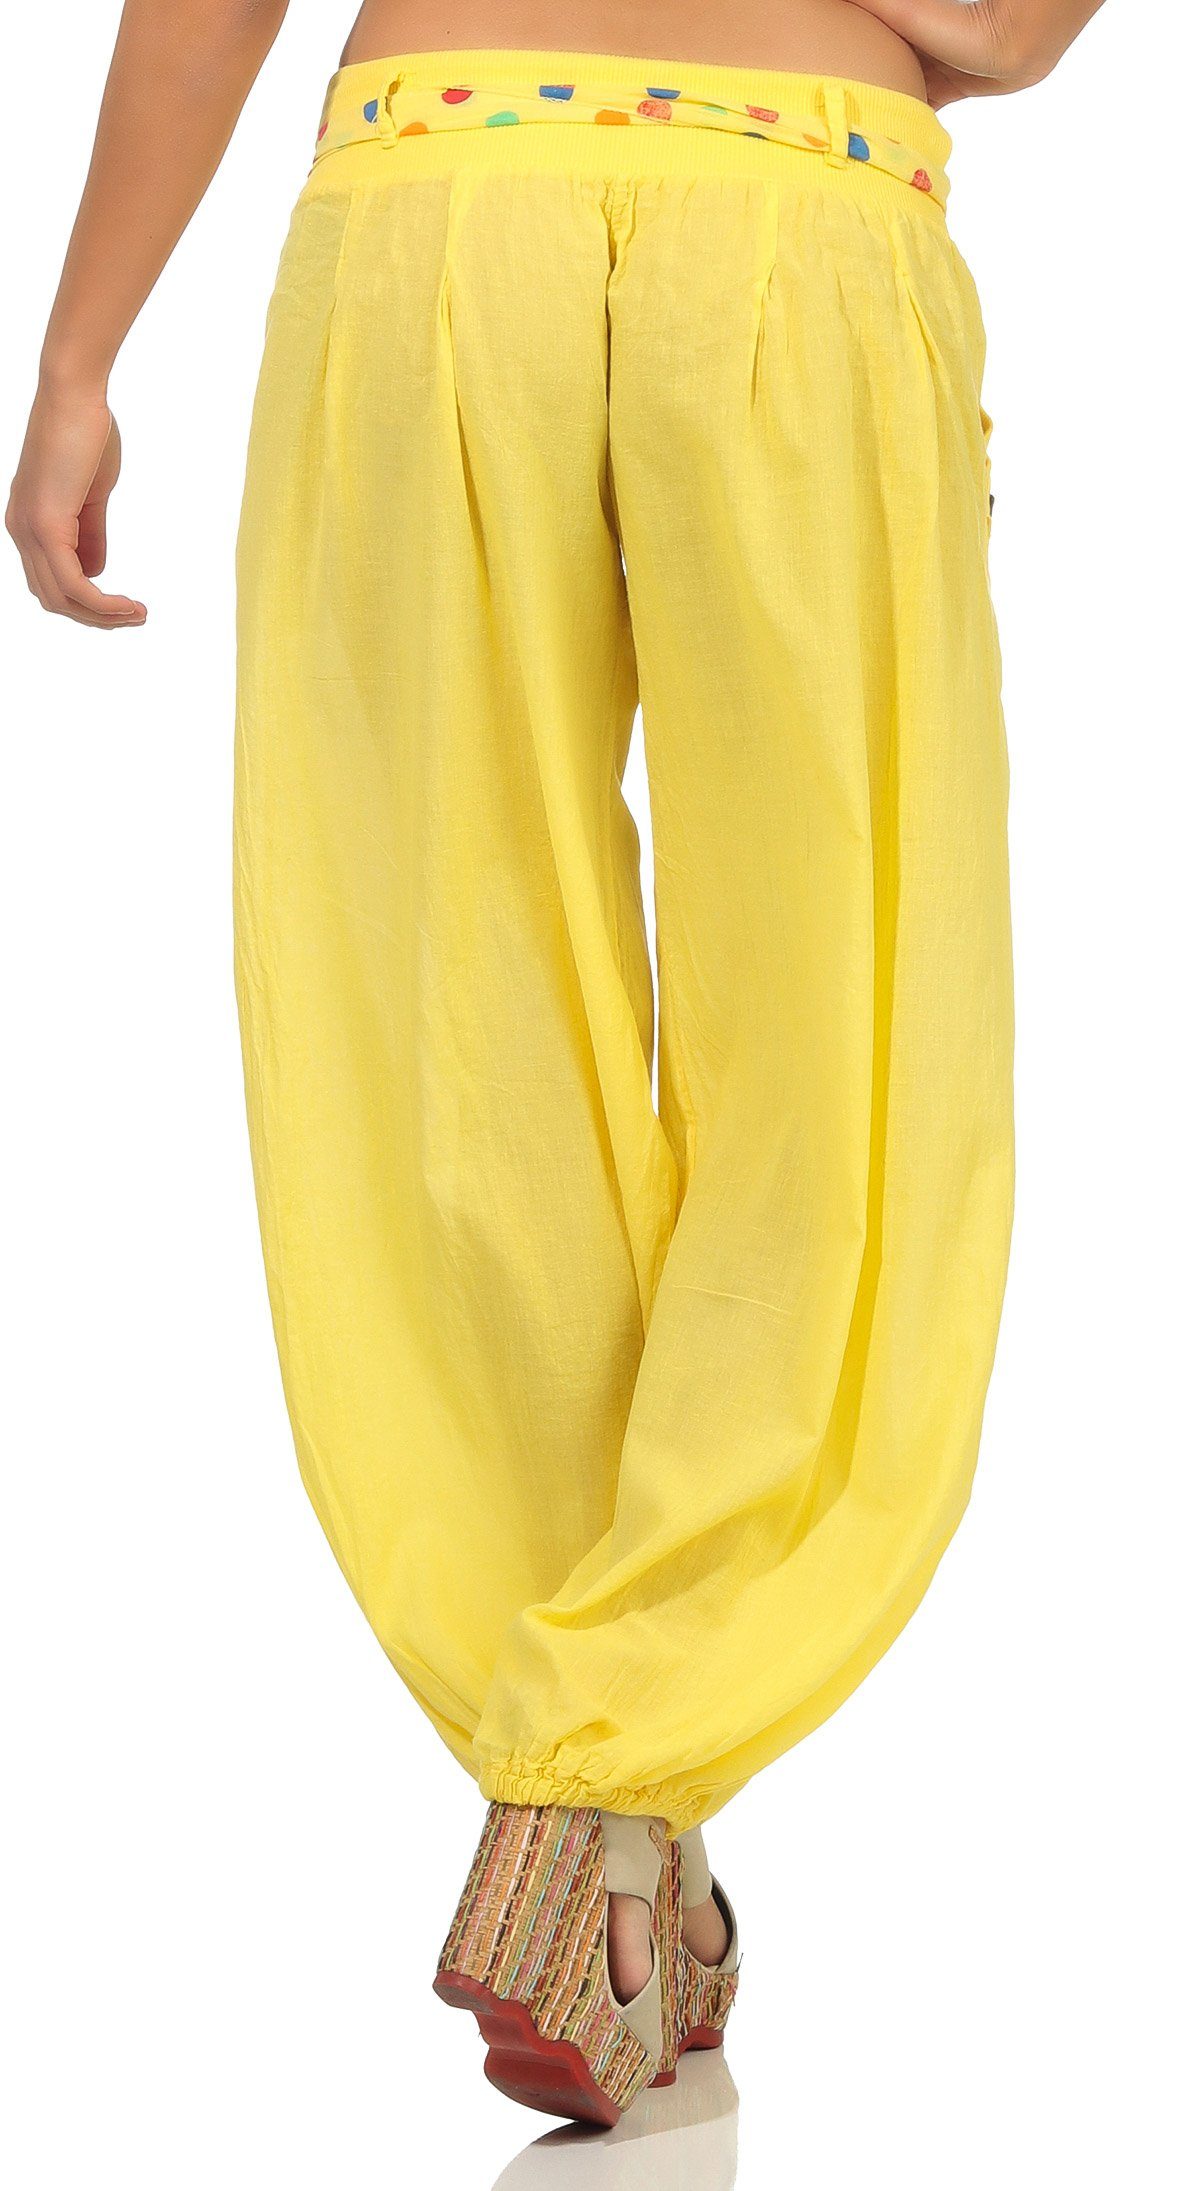 gelb fashion more farblich than 3417 Haremshose mit malito Einheitsgröße Stoffgürtel passendem